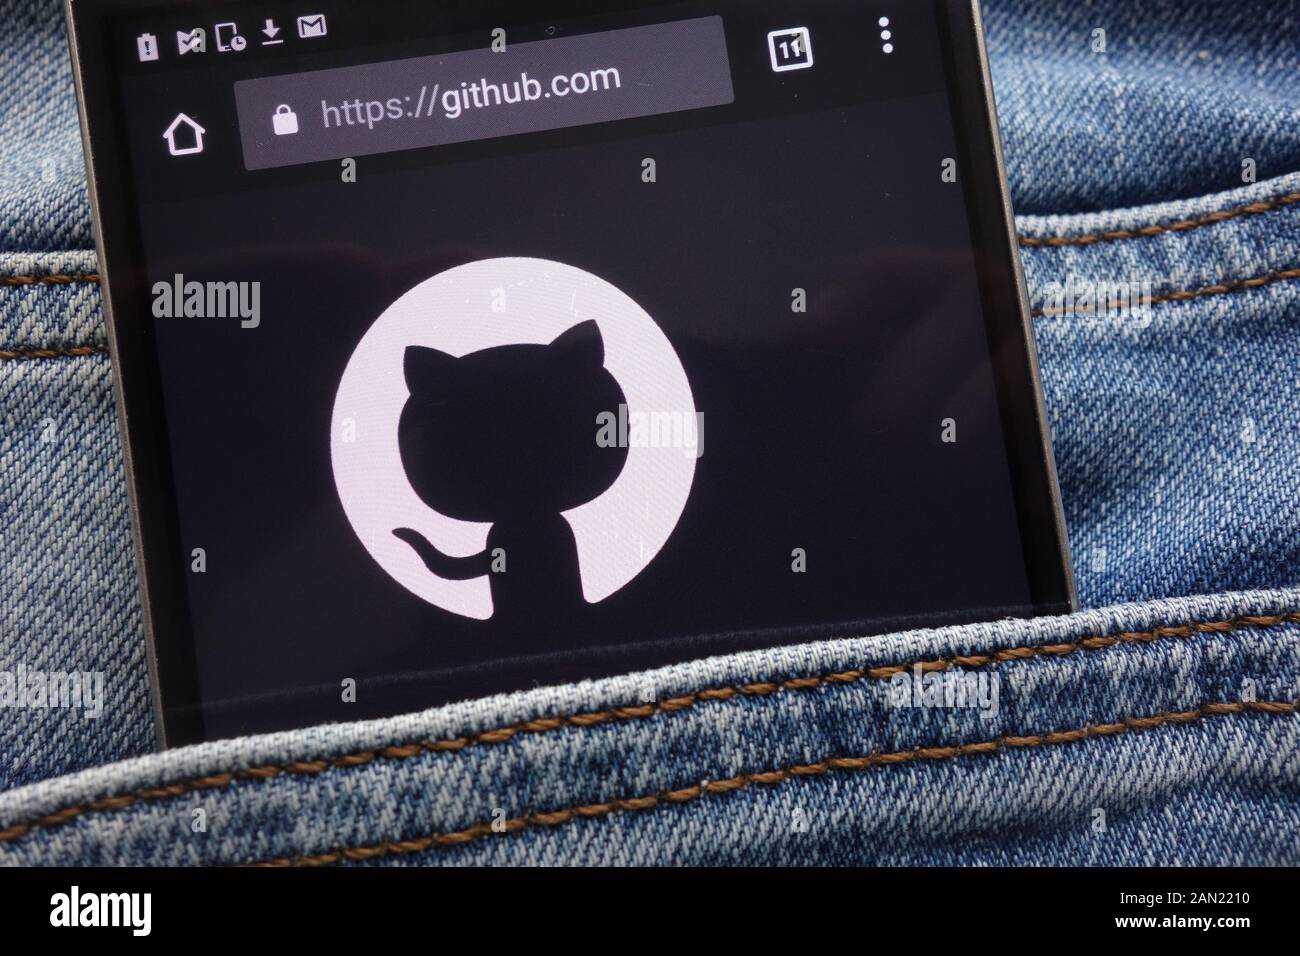 GitHub Website angezeigt auf dem Smartphone in Jeans Tasche versteckt Stockfoto